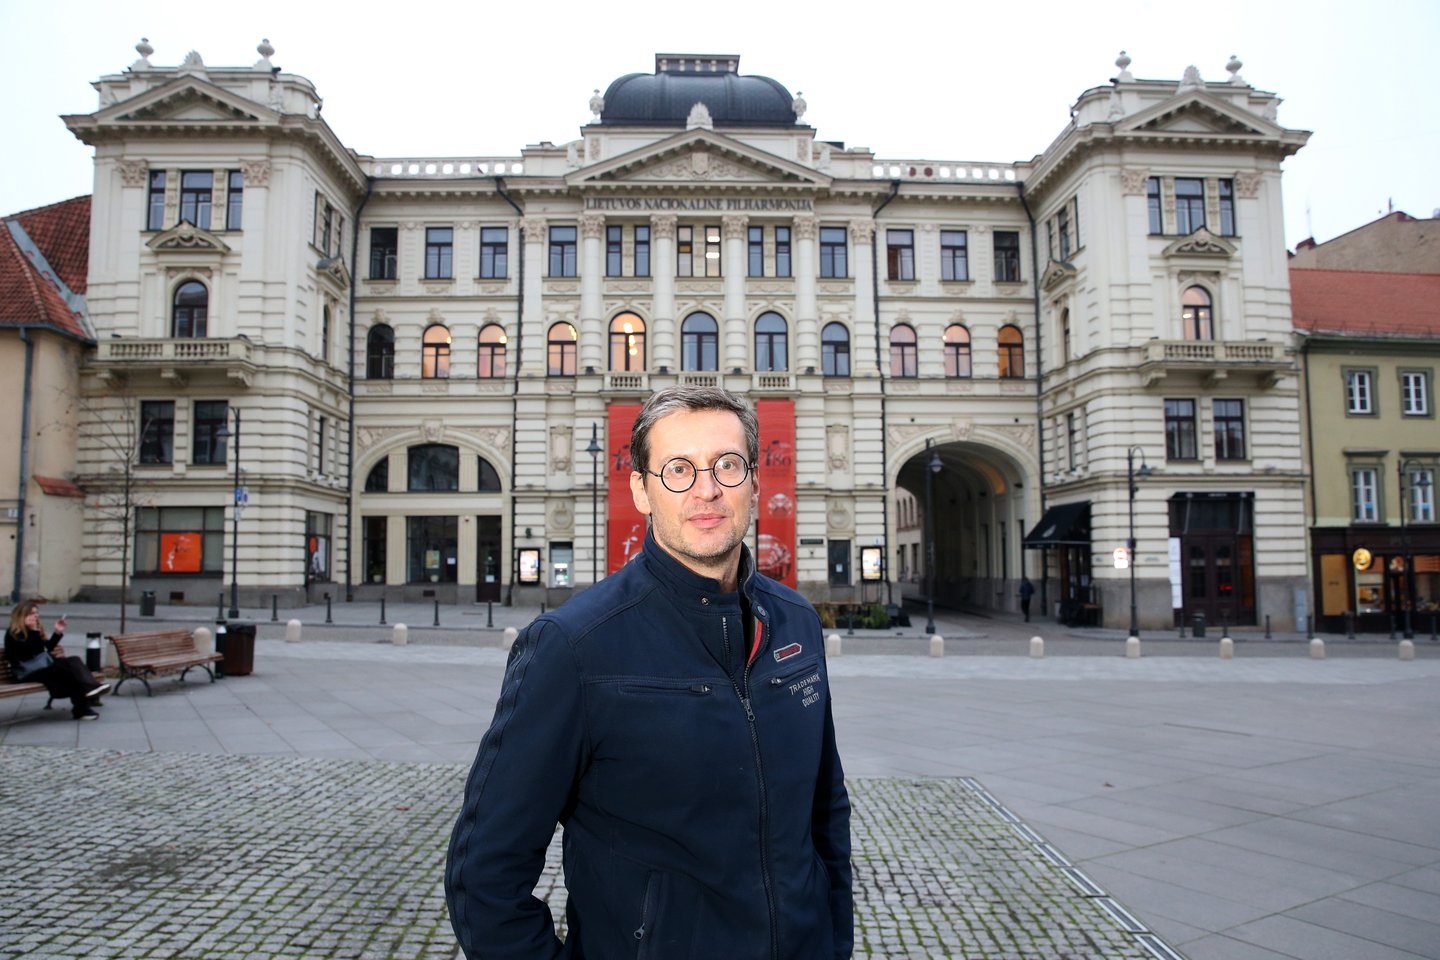 Nors maestro karjera pasuko į Šveicariją, Vilnius jo širdyje užima išskirtinę vietą: „Čia – tikrieji mano namai.“<br>R.Danisevičiaus nuotr.